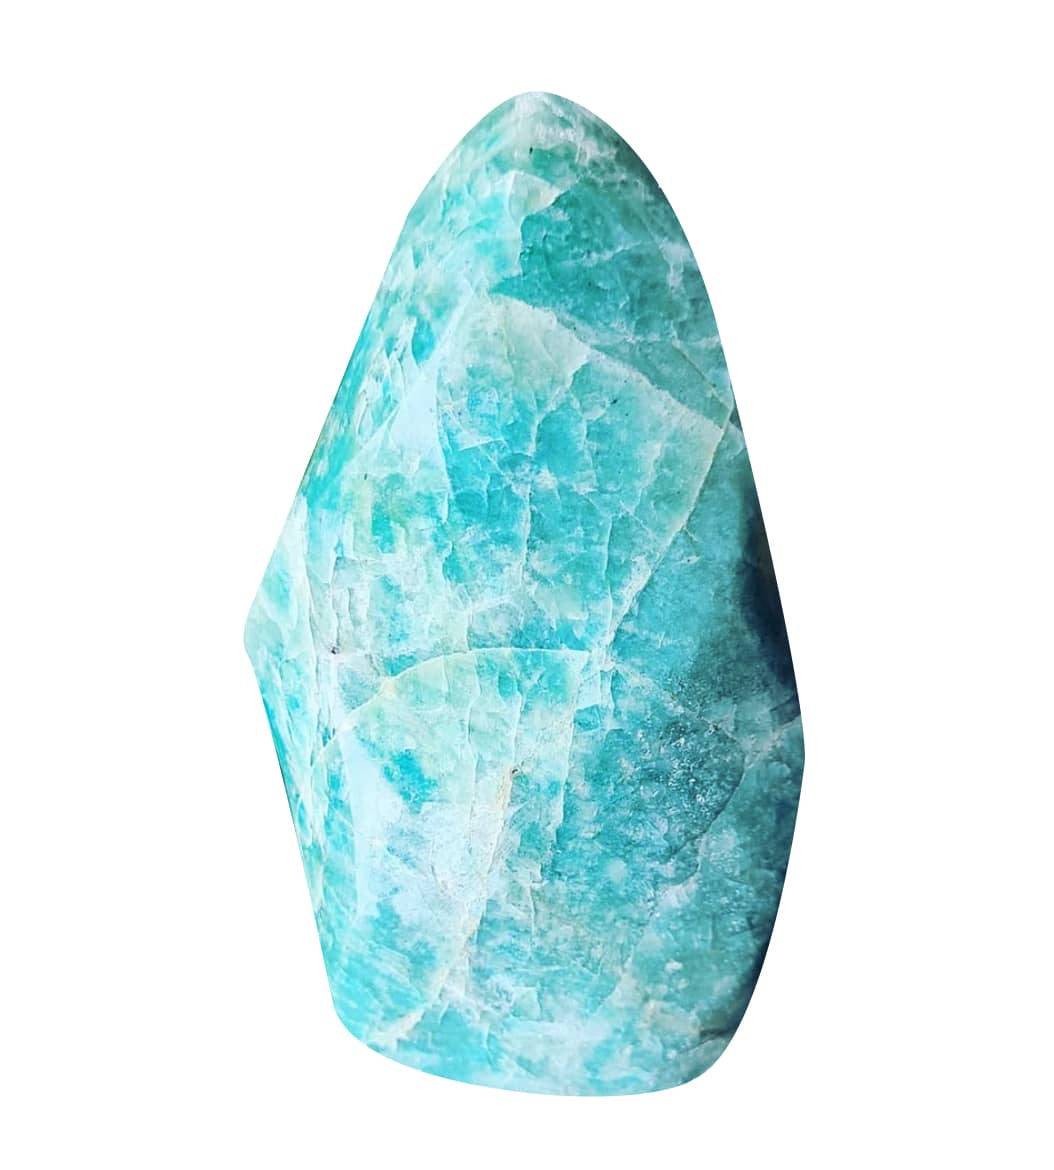 Les bienfaits des pierre fines - Le pouvoir des cristaux et minéraux –  Natural Mystic Orgonites Artisanales